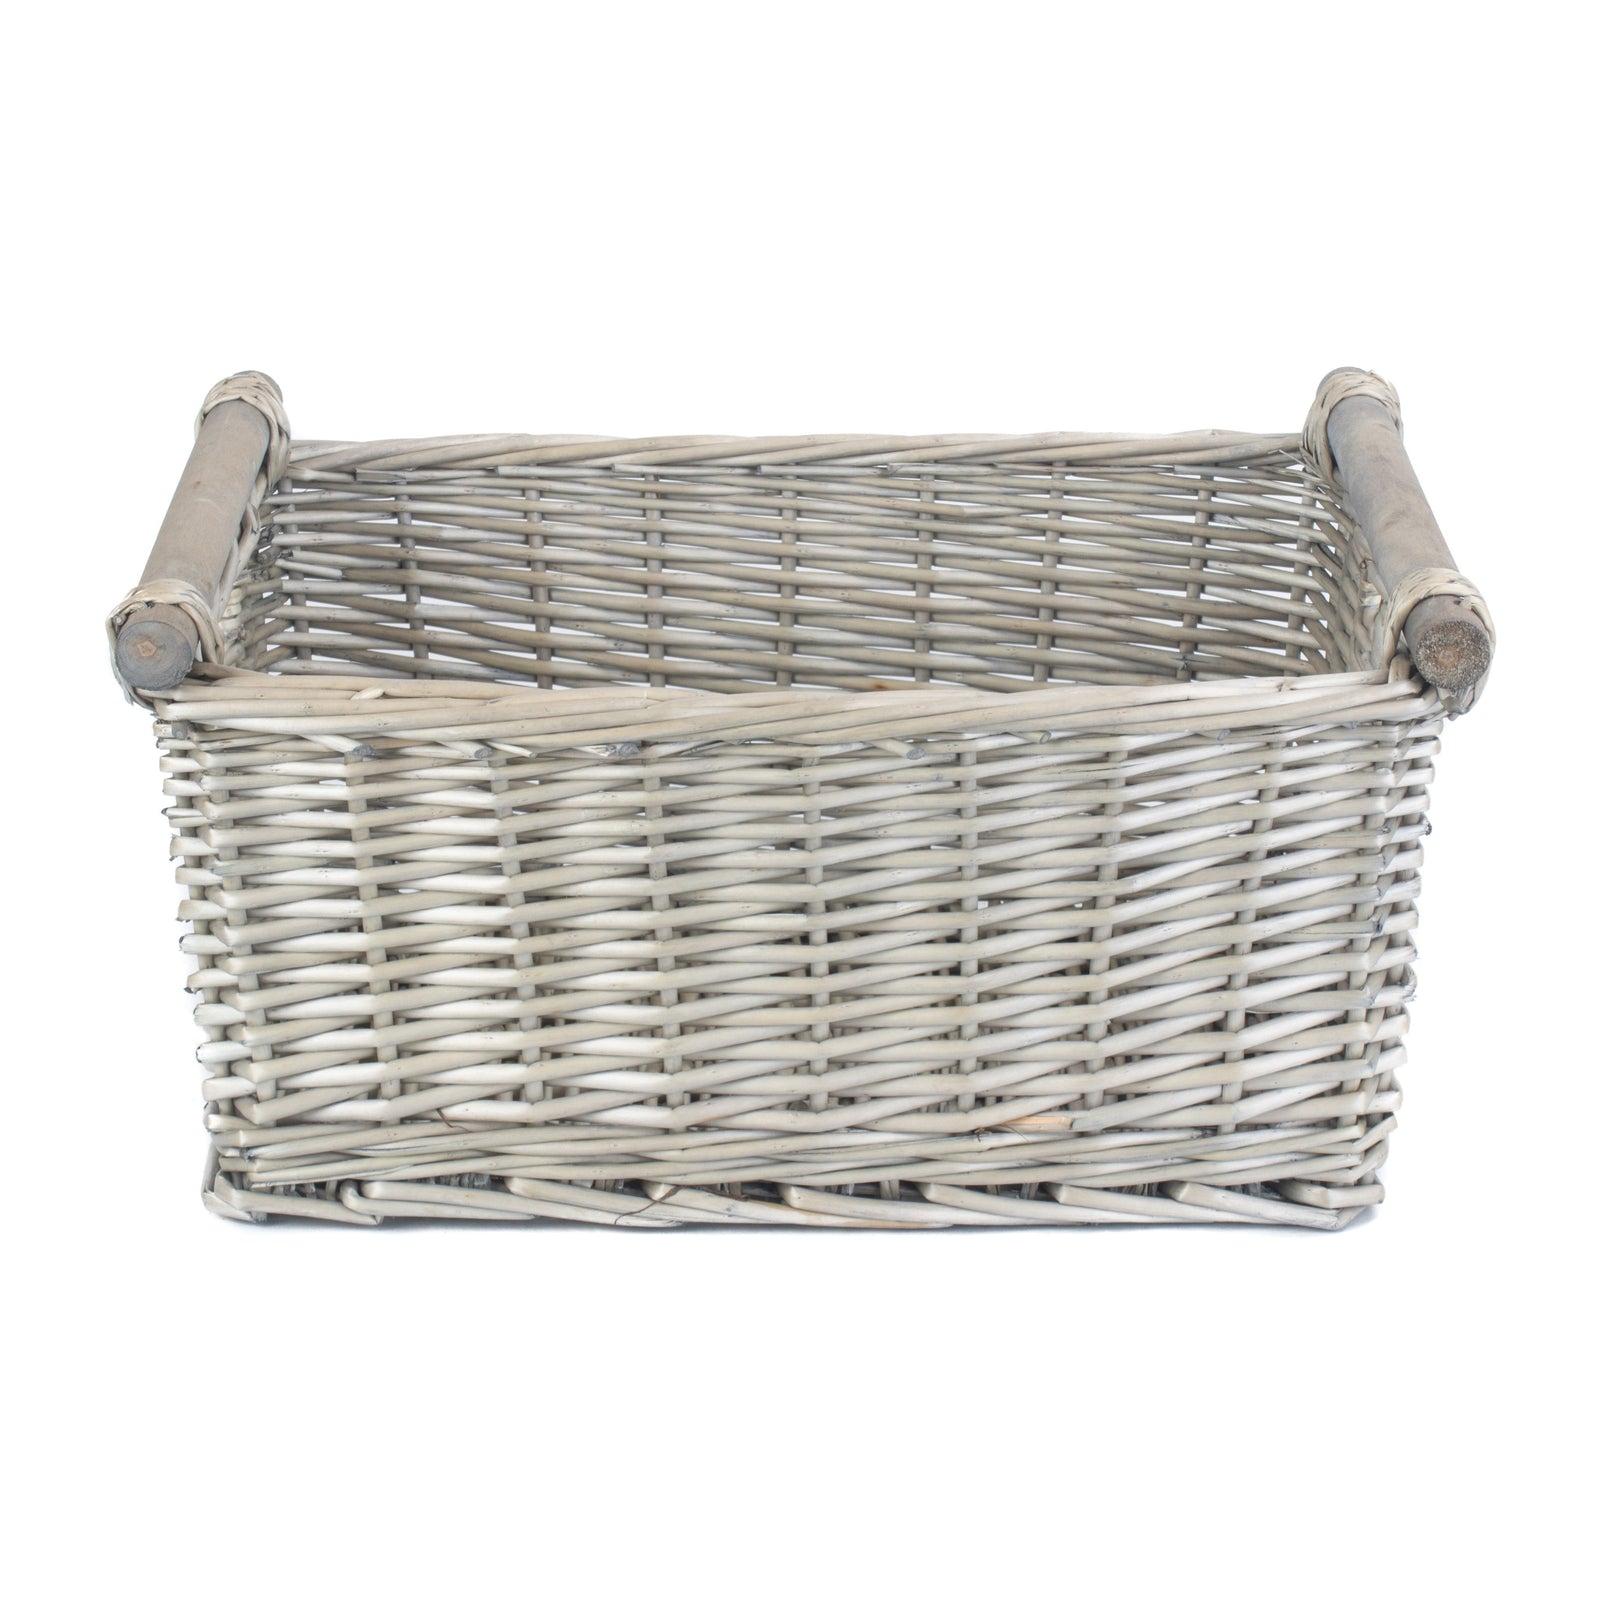 Red Hamper Wicker Grey Wash Wooden Handled Storage Basket